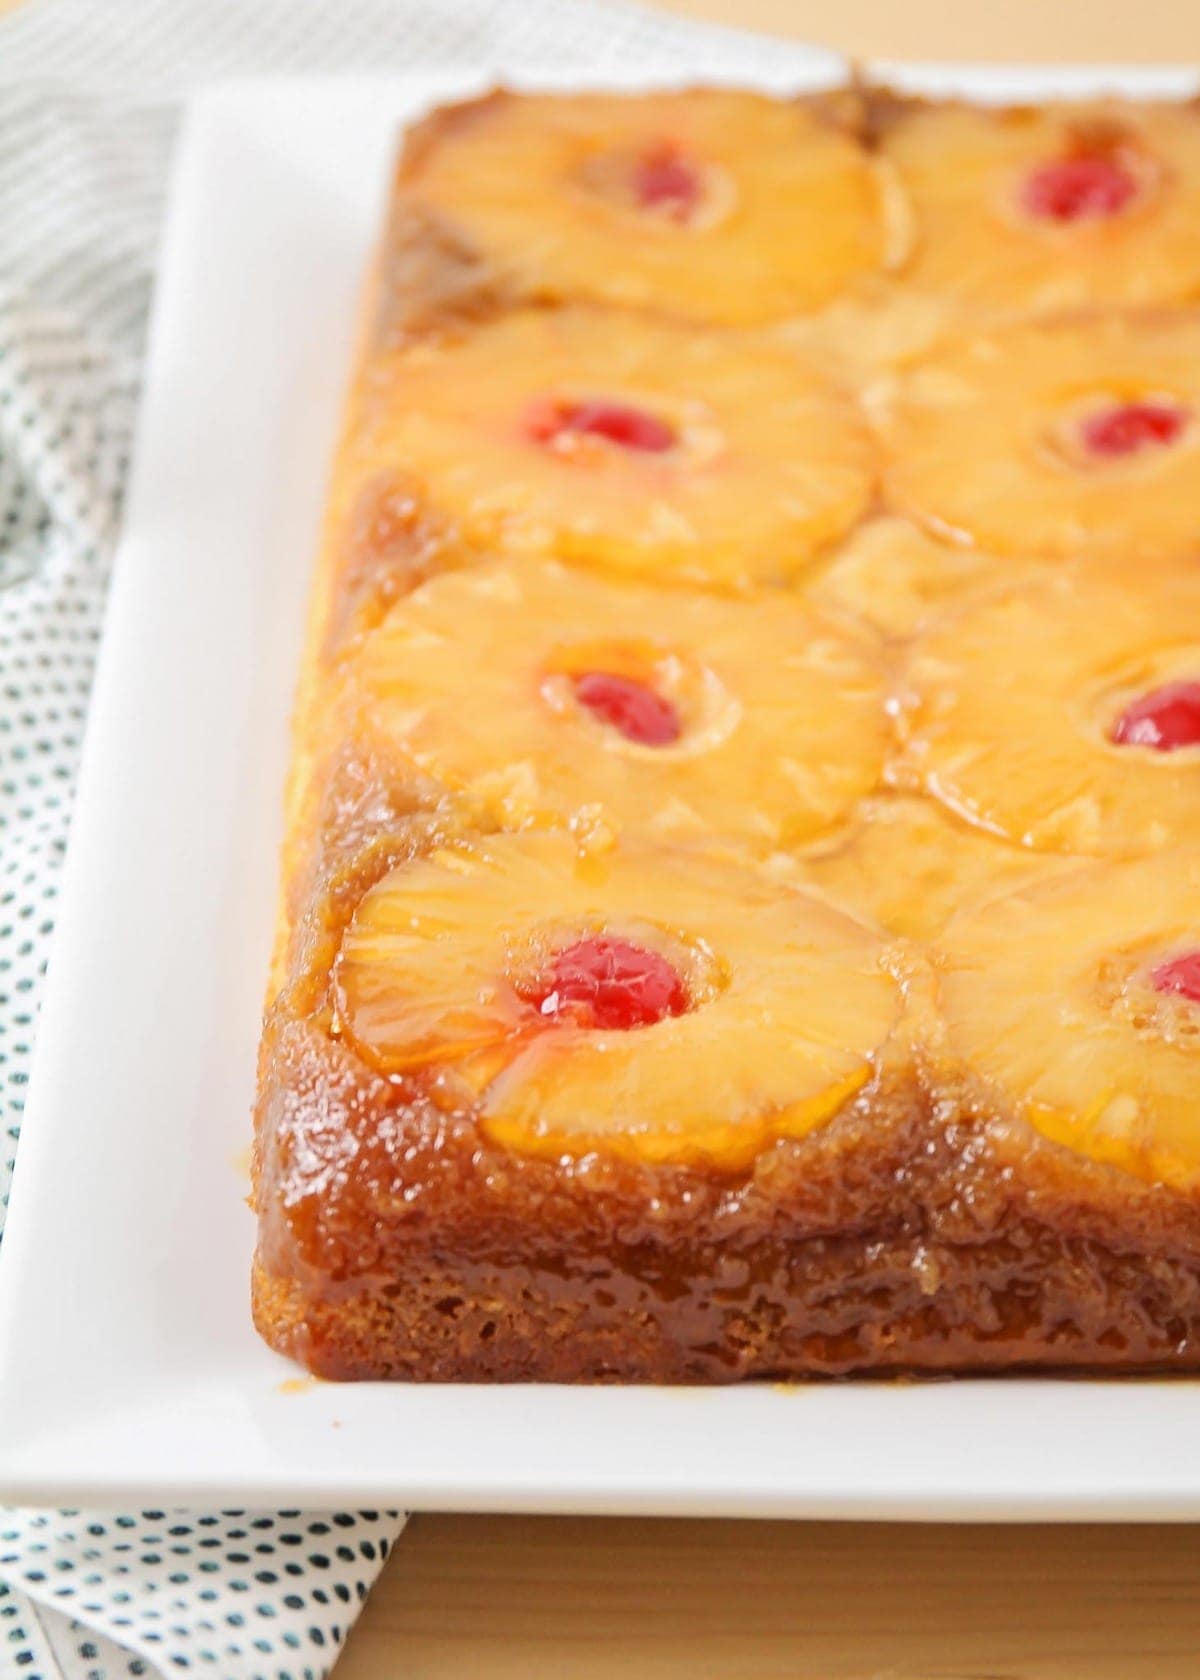 Dessert: Tasty Royal Walnut Cake Recipe - Natasha's Kitchen - YouTube